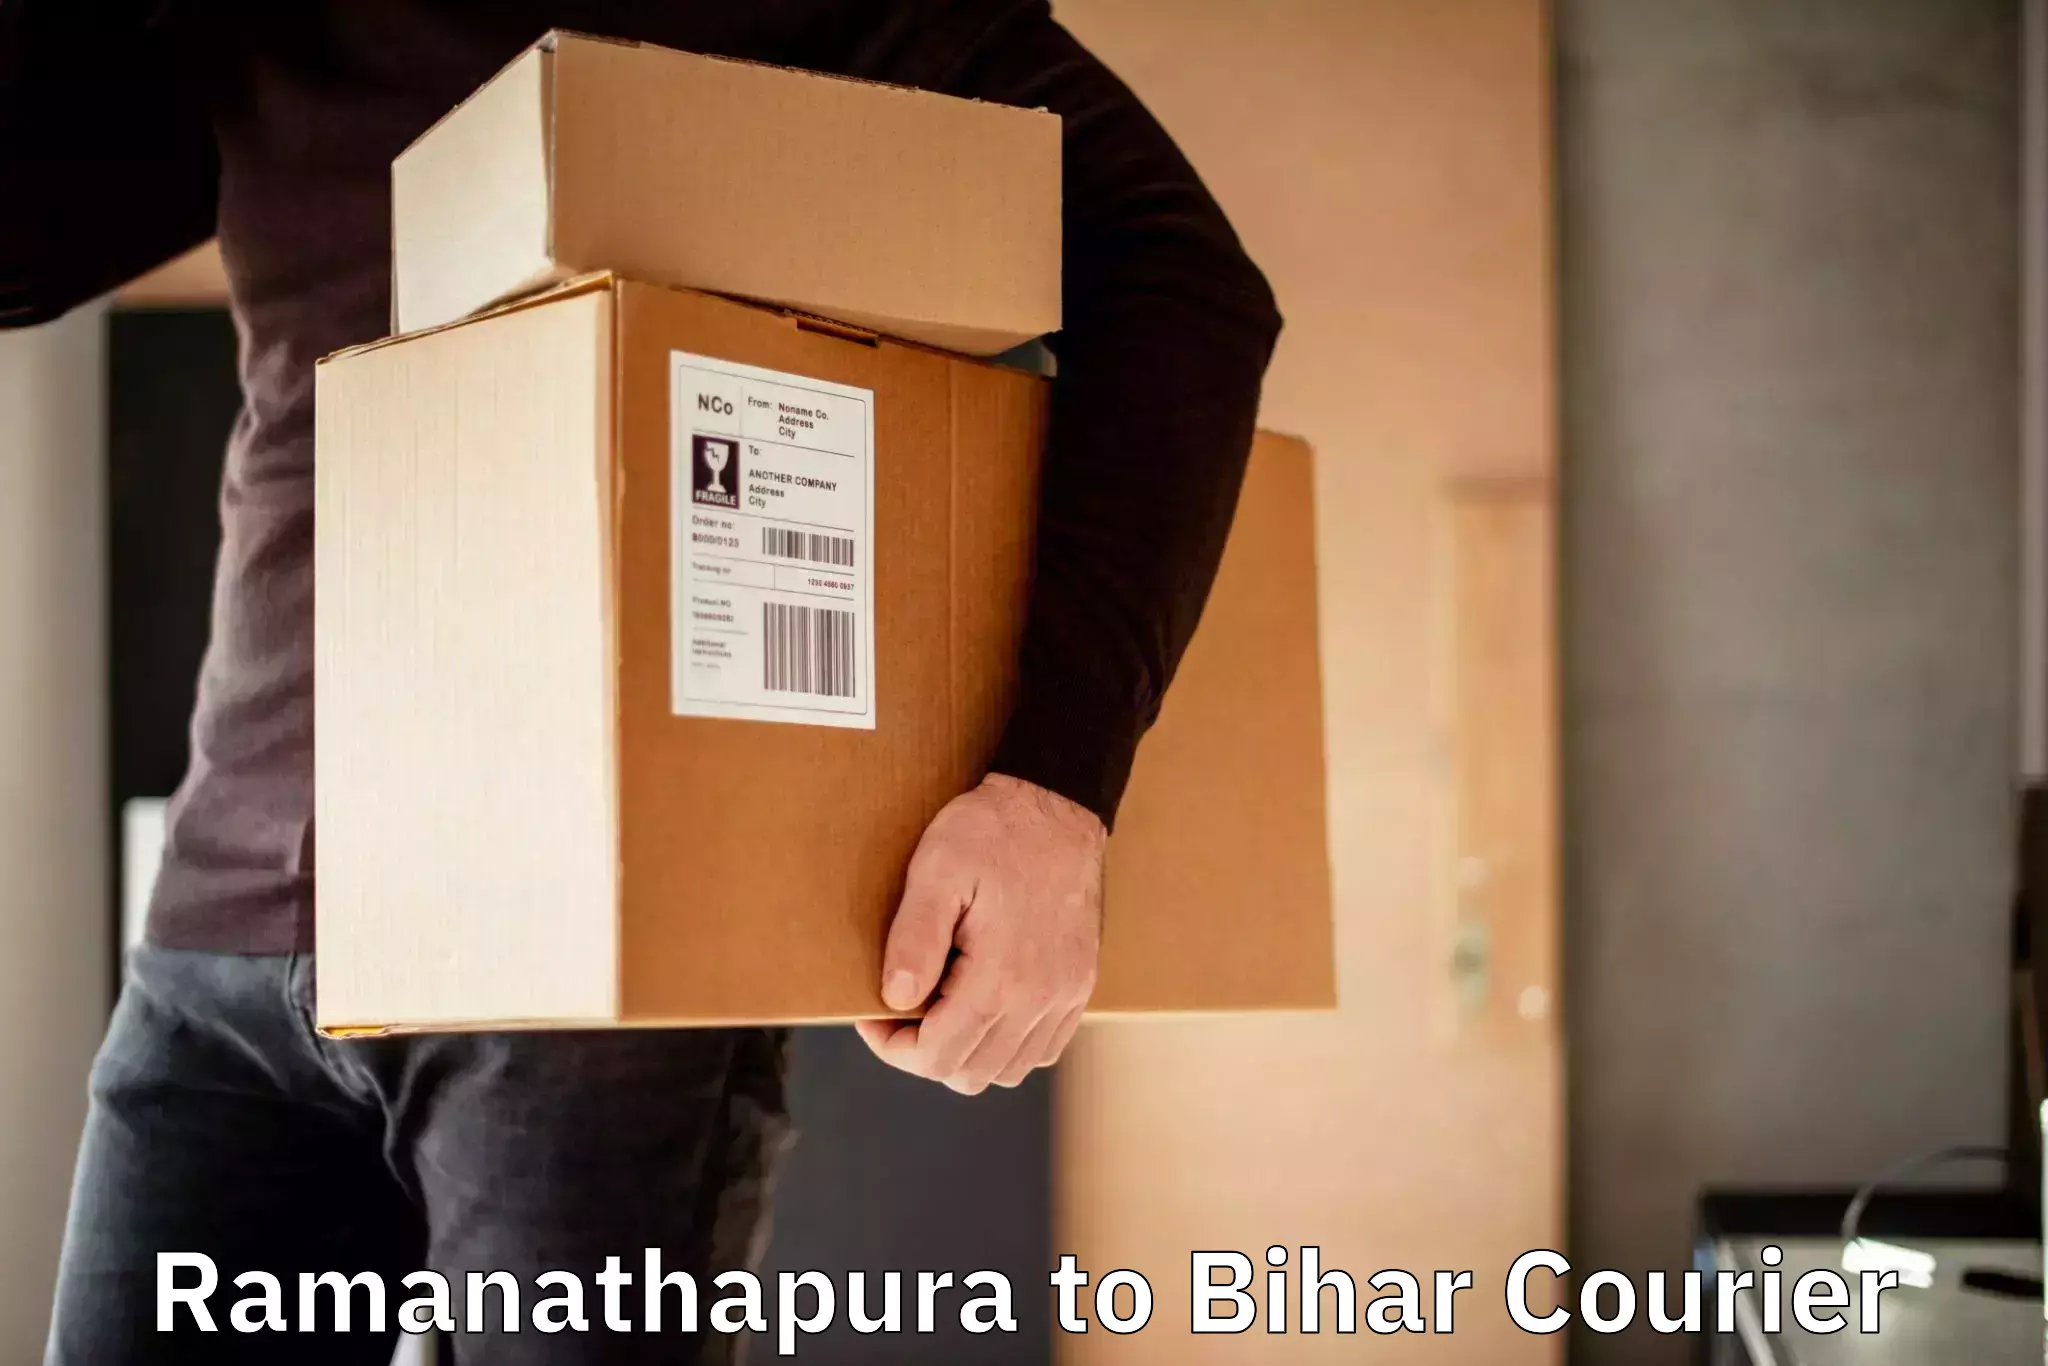 Discounted shipping Ramanathapura to Buxar